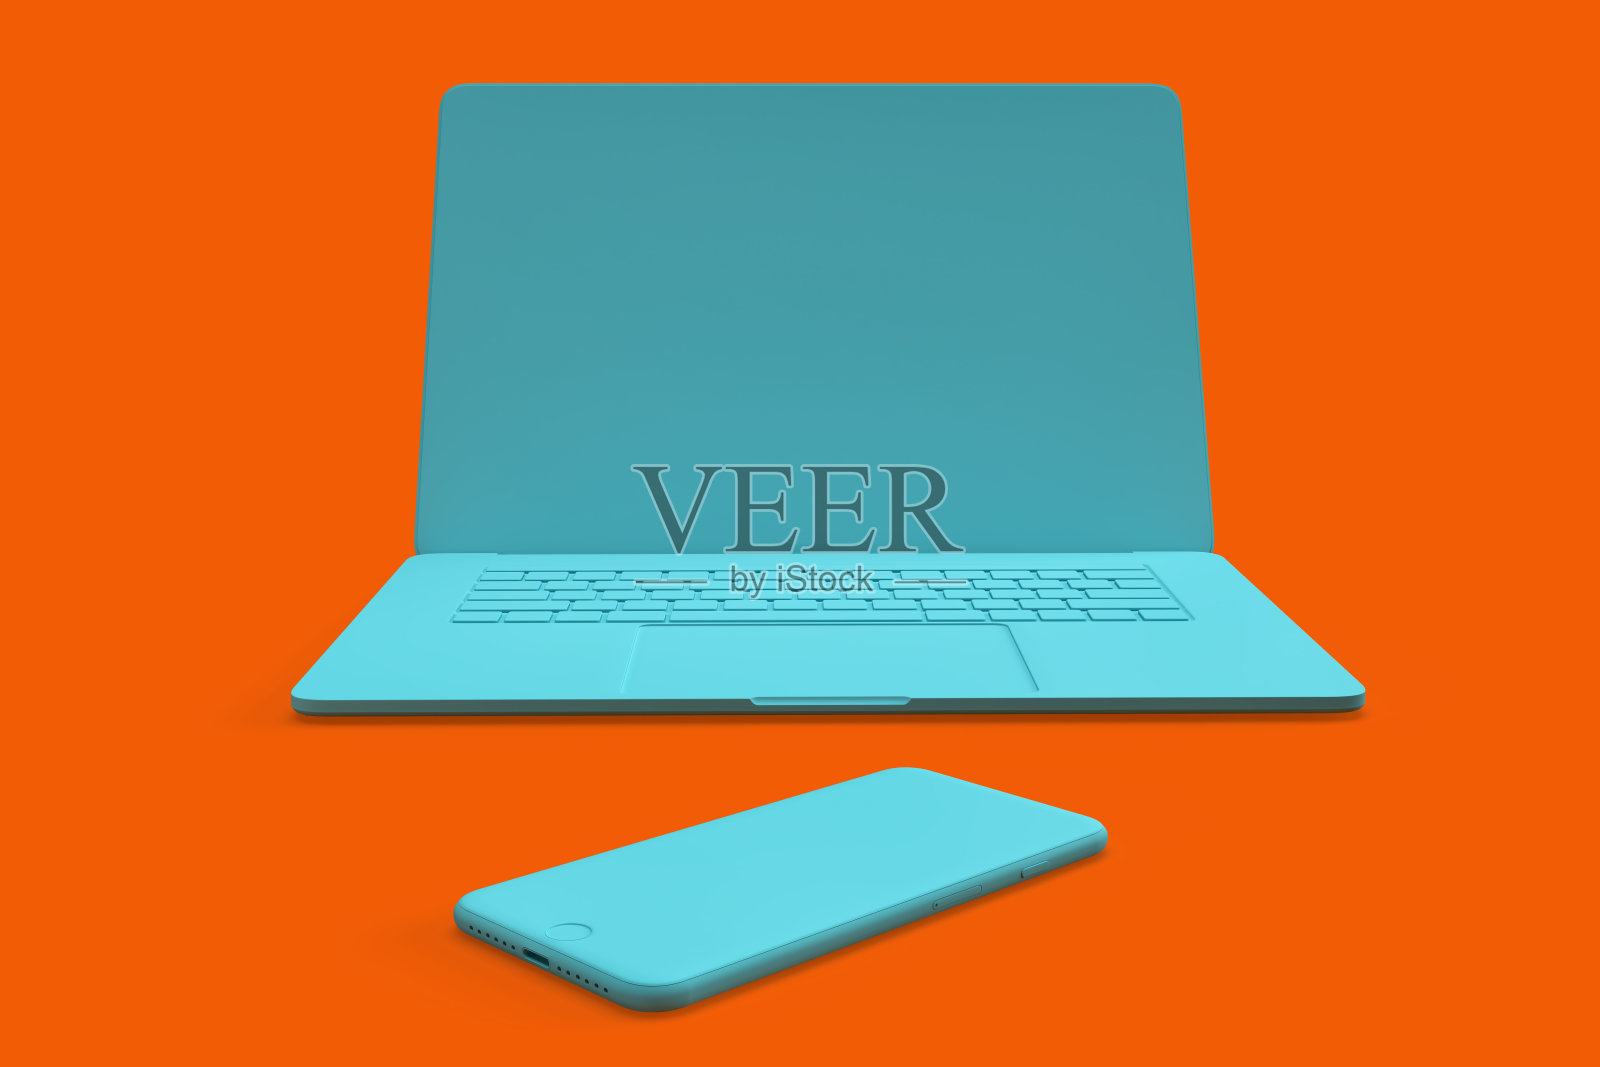 橙色背景下的蓝绿色笔记本电脑和智能手机的简约构图照片摄影图片